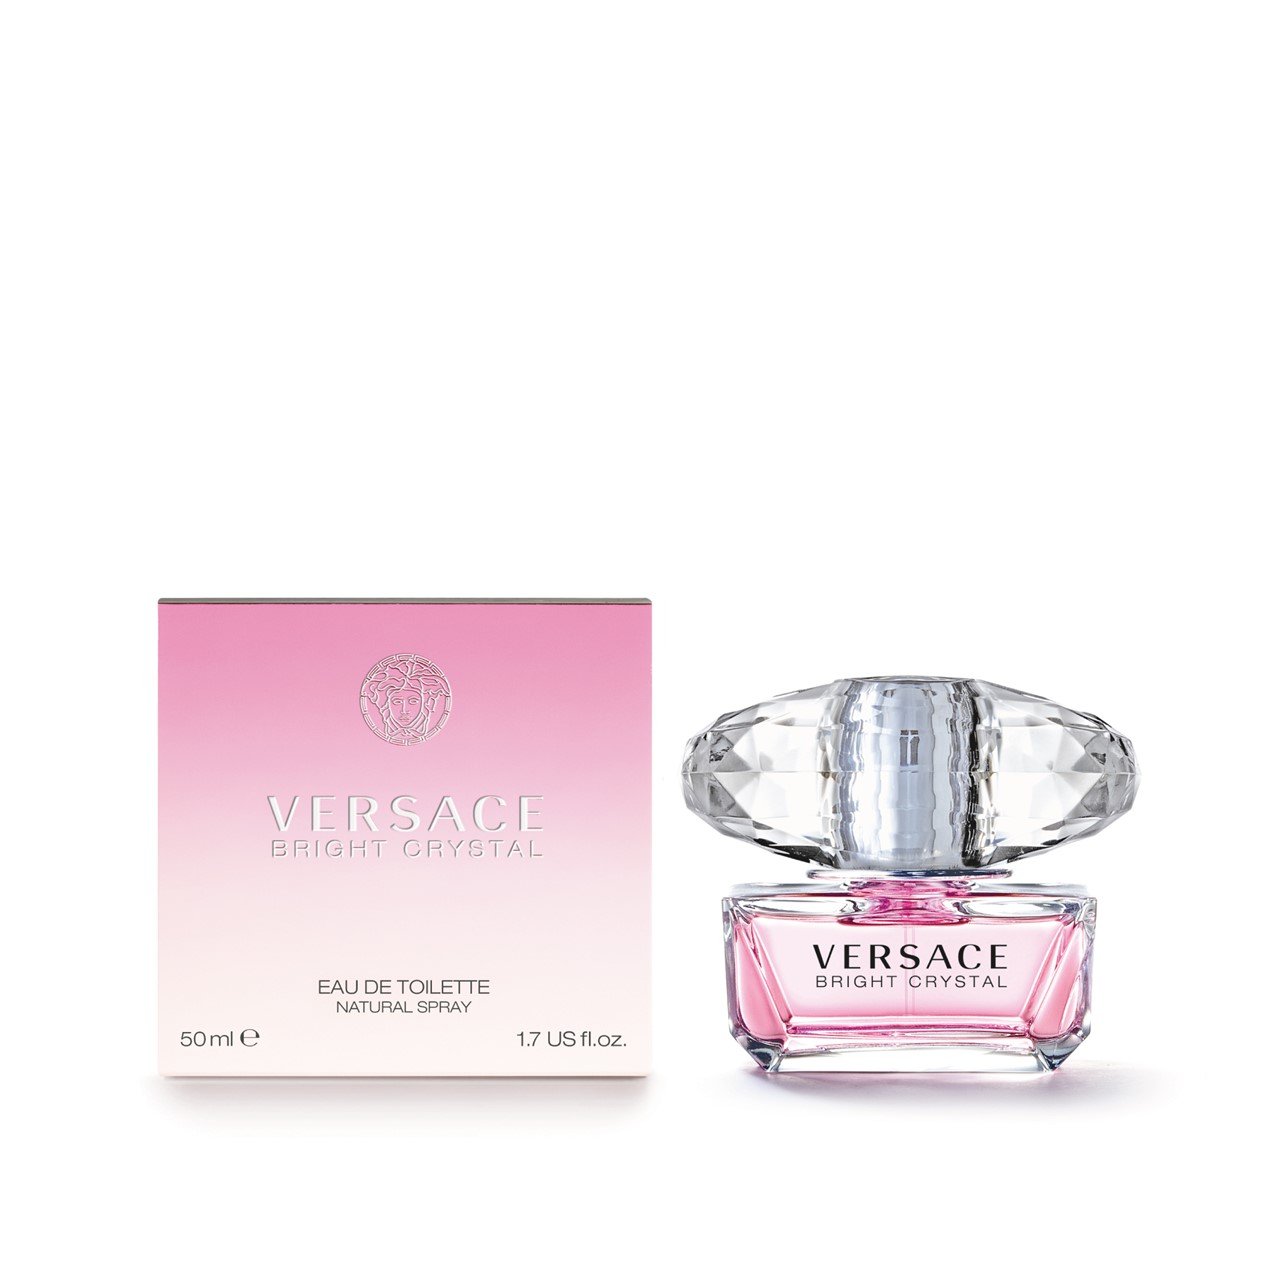 Versace Bright Crystal Eau de Toilette 50ml (1.7fl.oz.)